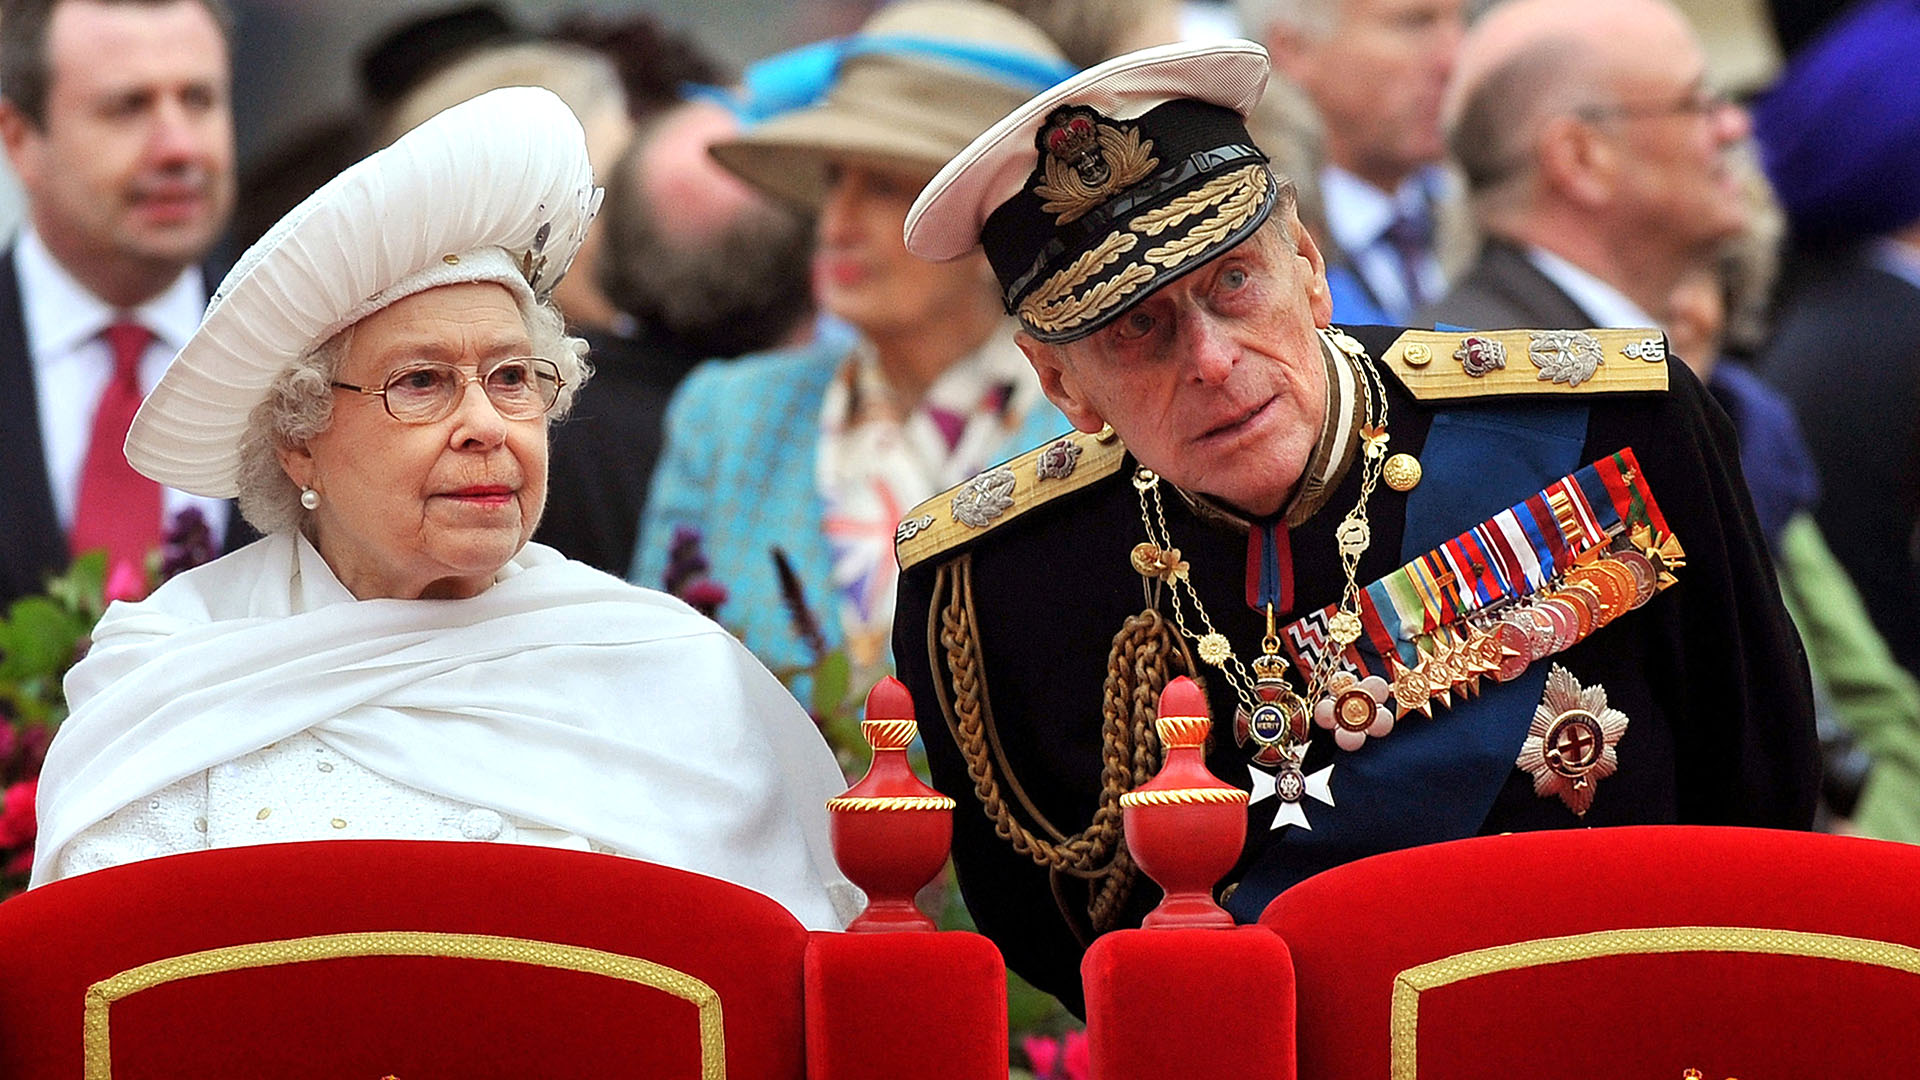 En una imagen de archivo tomada el 3 de junio de 2012, se muestra a la reina Isabel II de Gran Bretaña y al príncipe Felipe, duque de Edimburgo